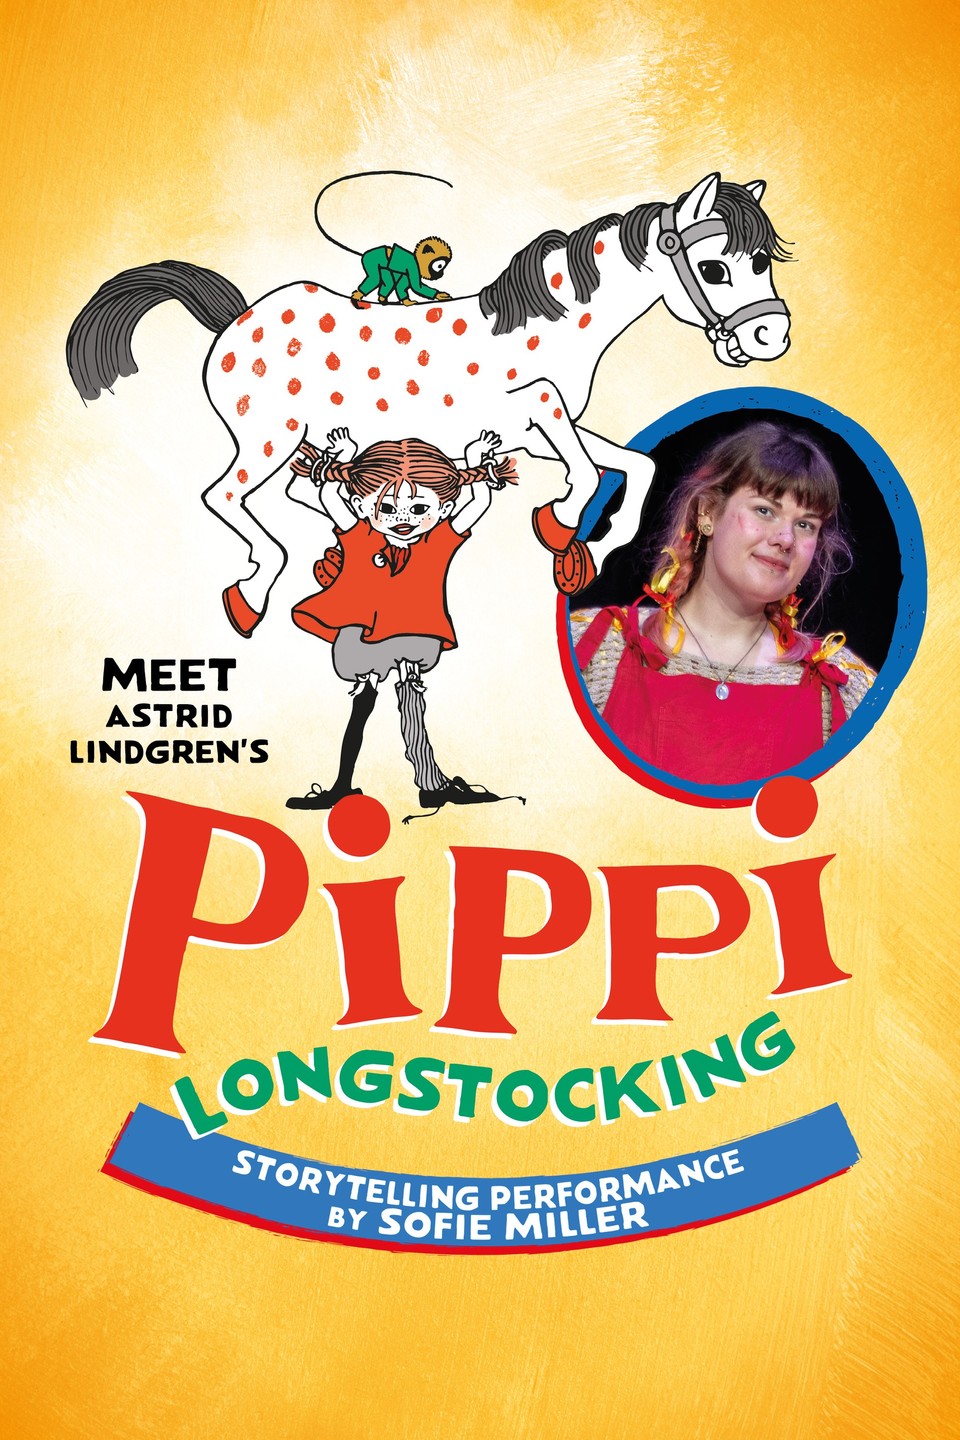 Meet Astrid Lindgren’s Pippi Longstocking